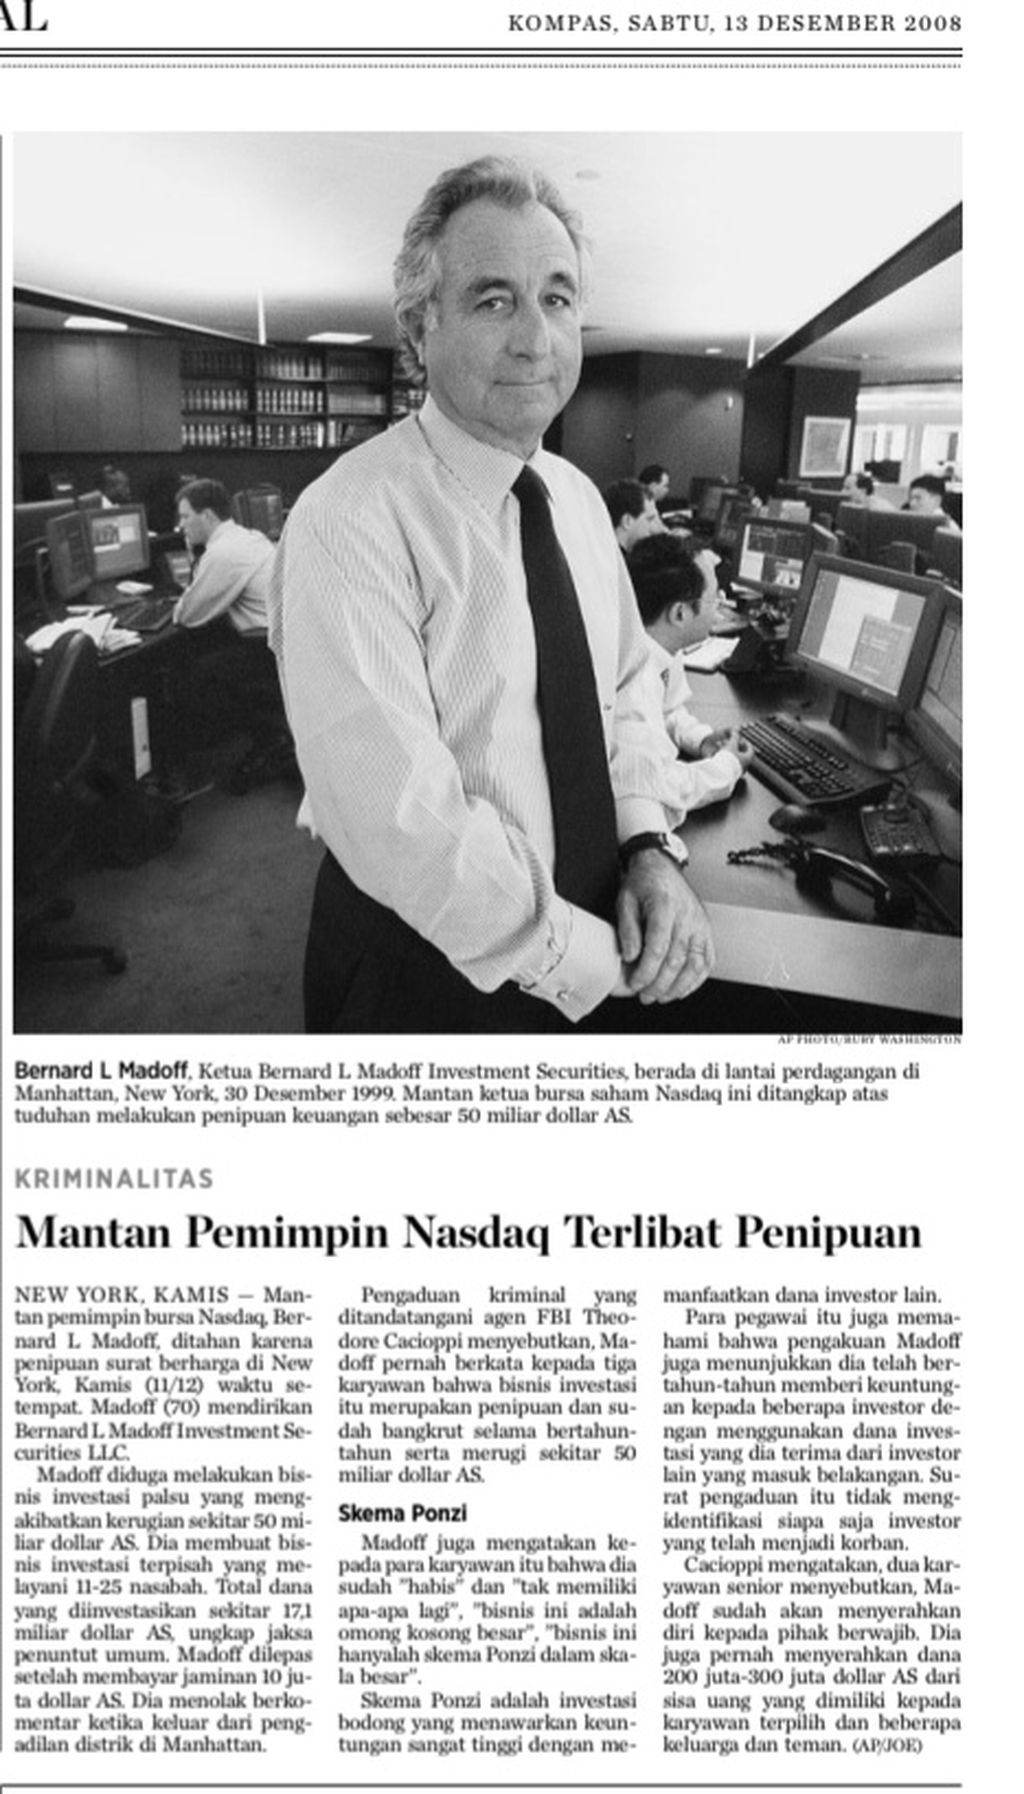 Berita harian <i>Kompas</i> 13 Desember 2008 soal skandal Bernie Madoff. Sumber: Pusat Informasi <i>Kompas</i> (PIK).